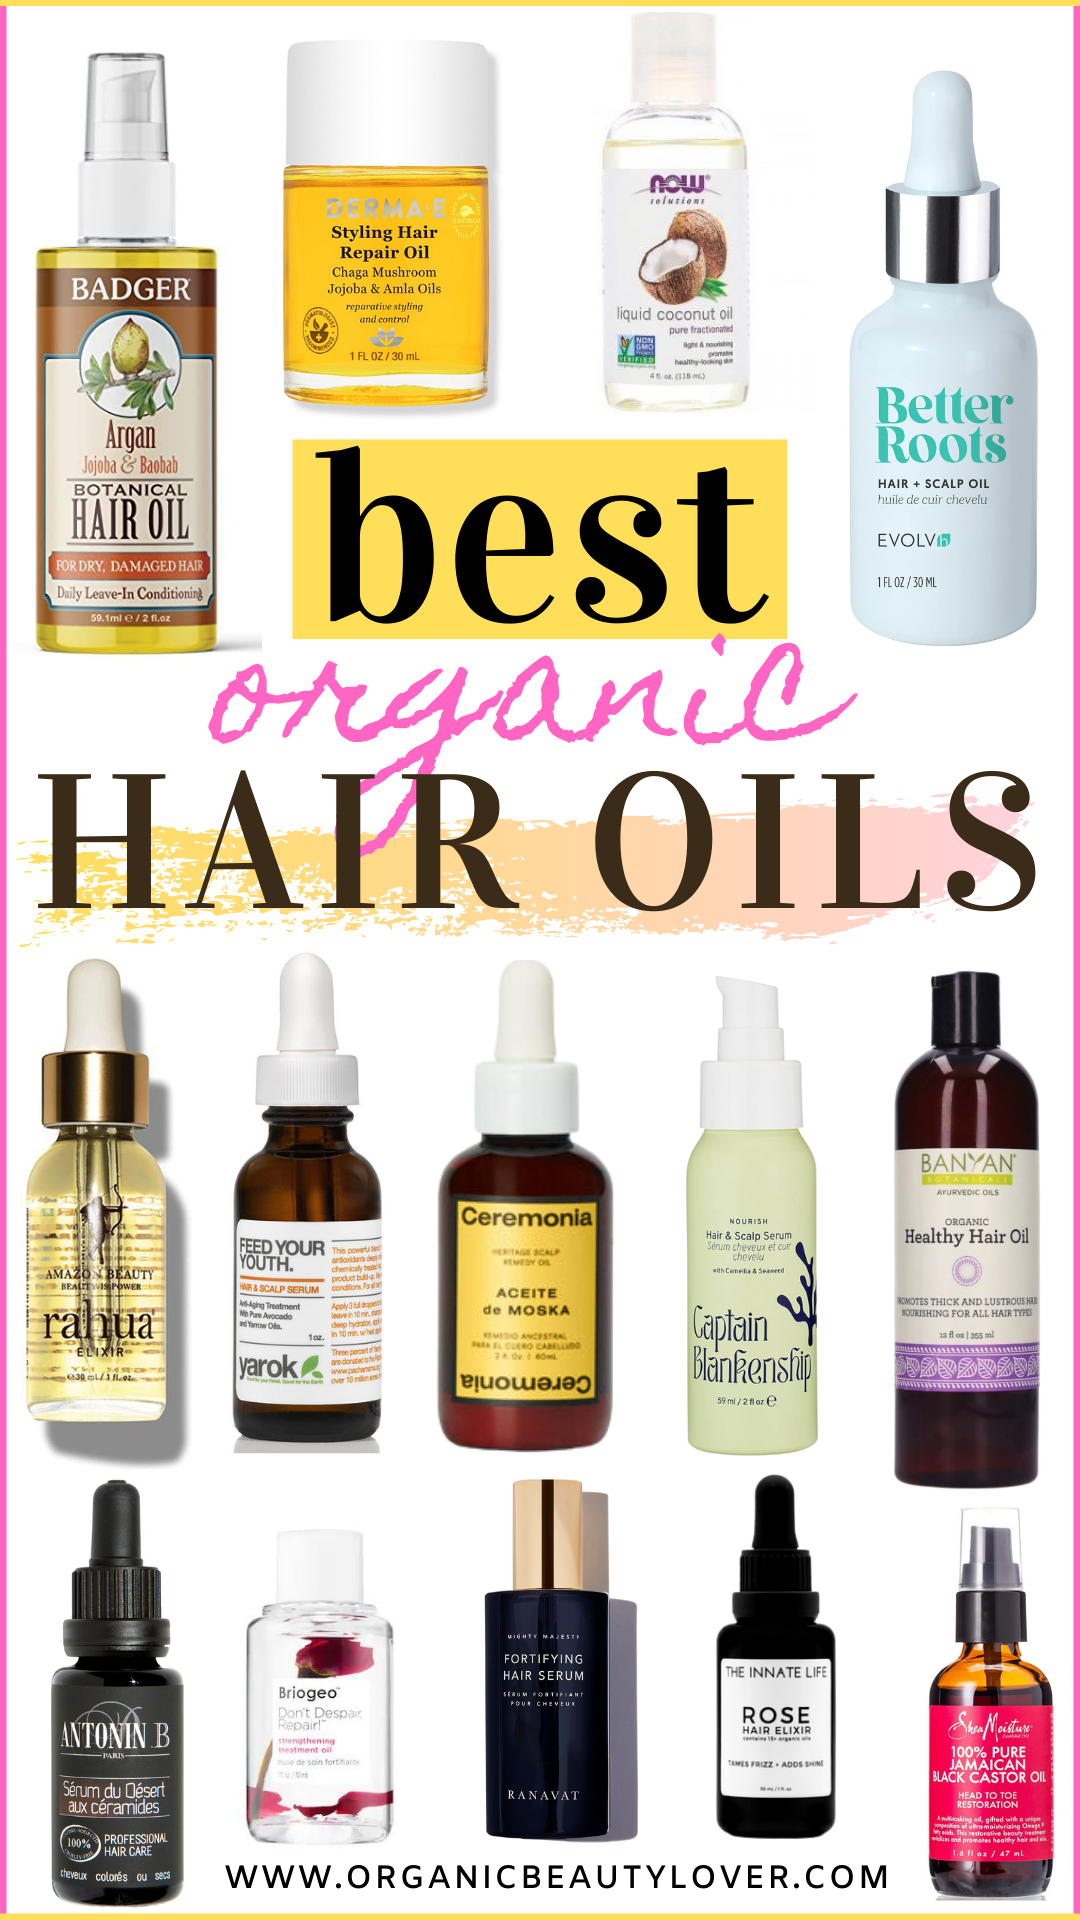 Best clean natural hair oils